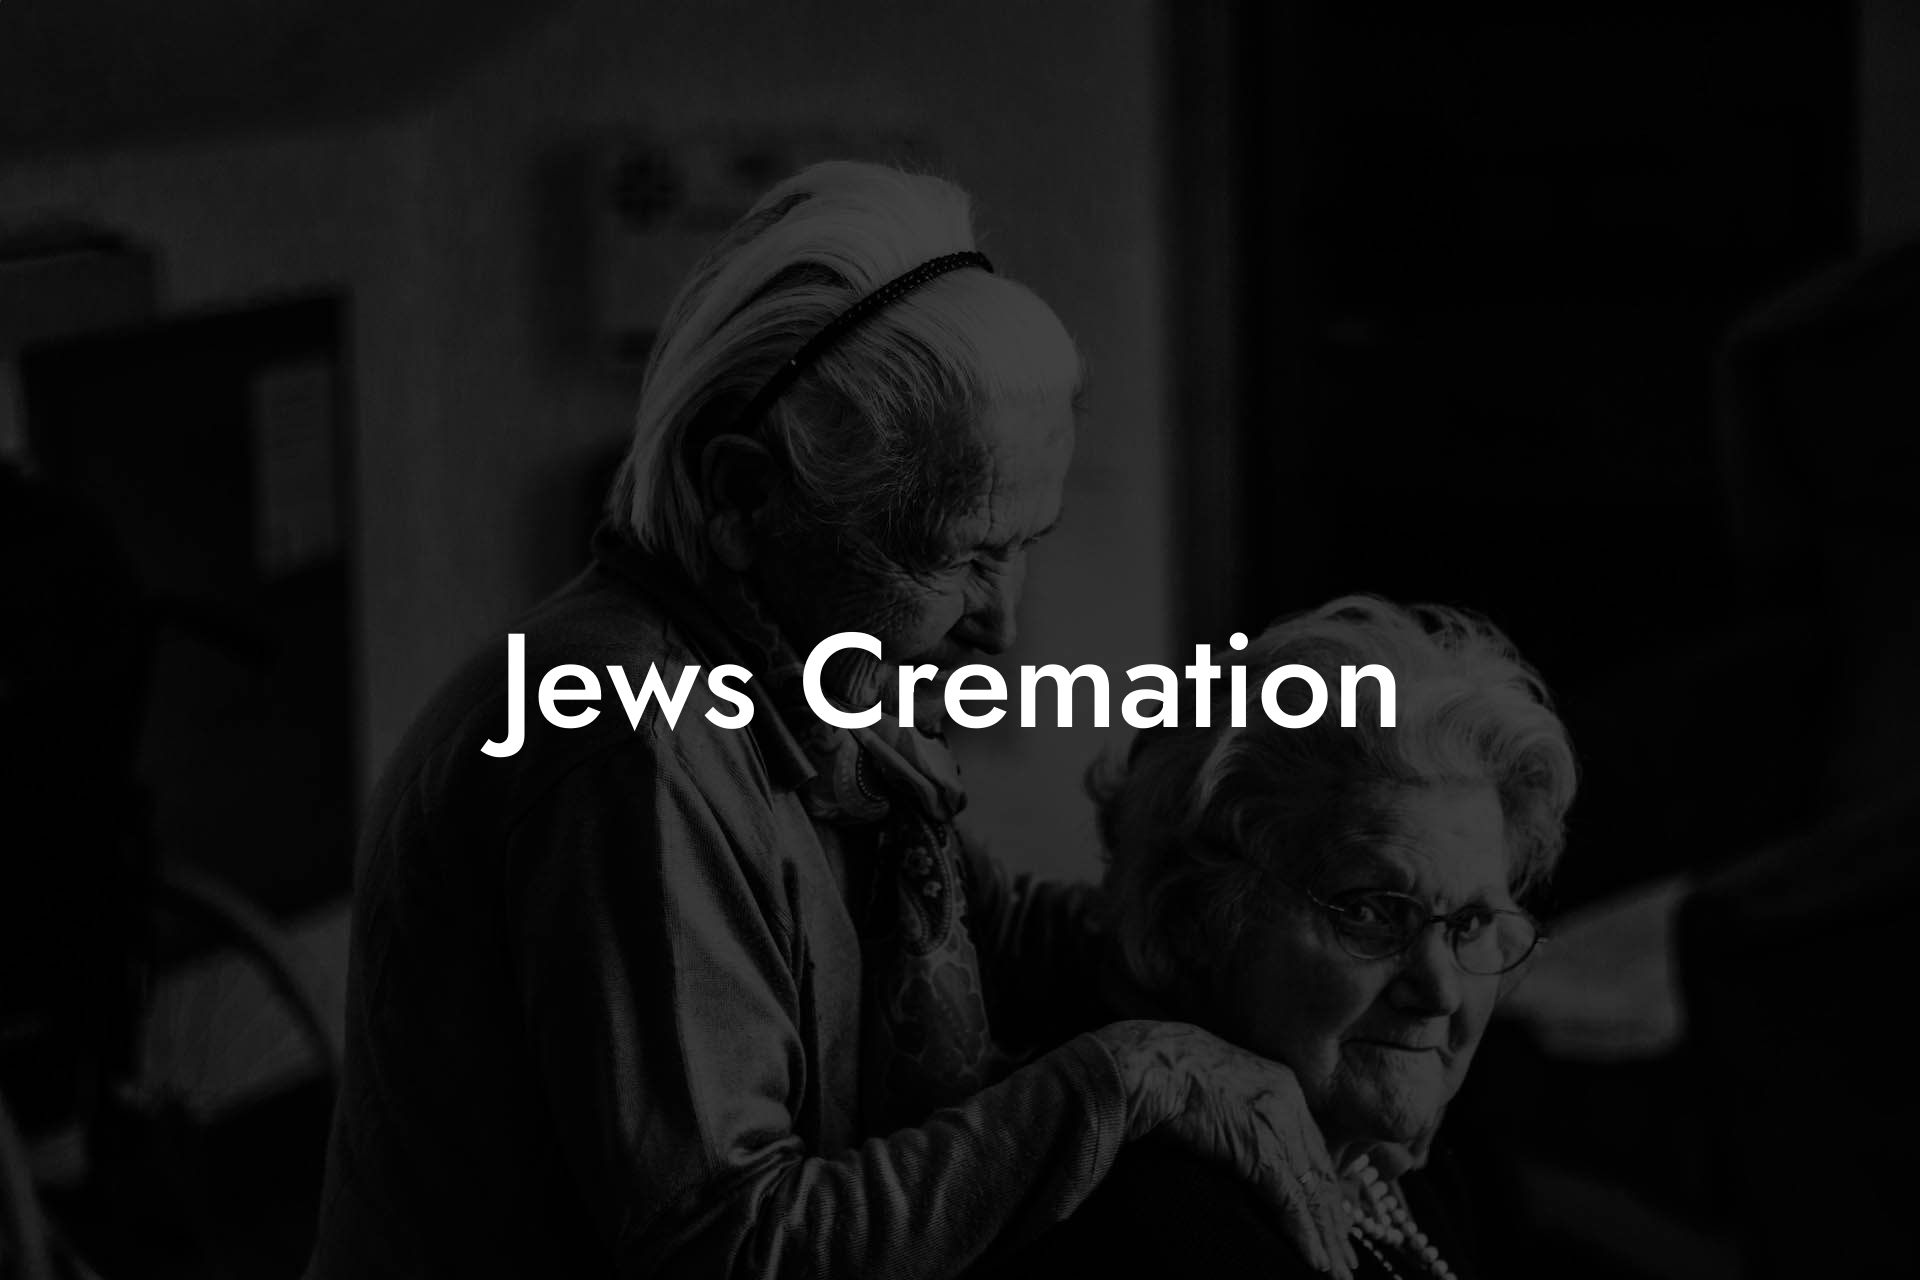 Jews Cremation